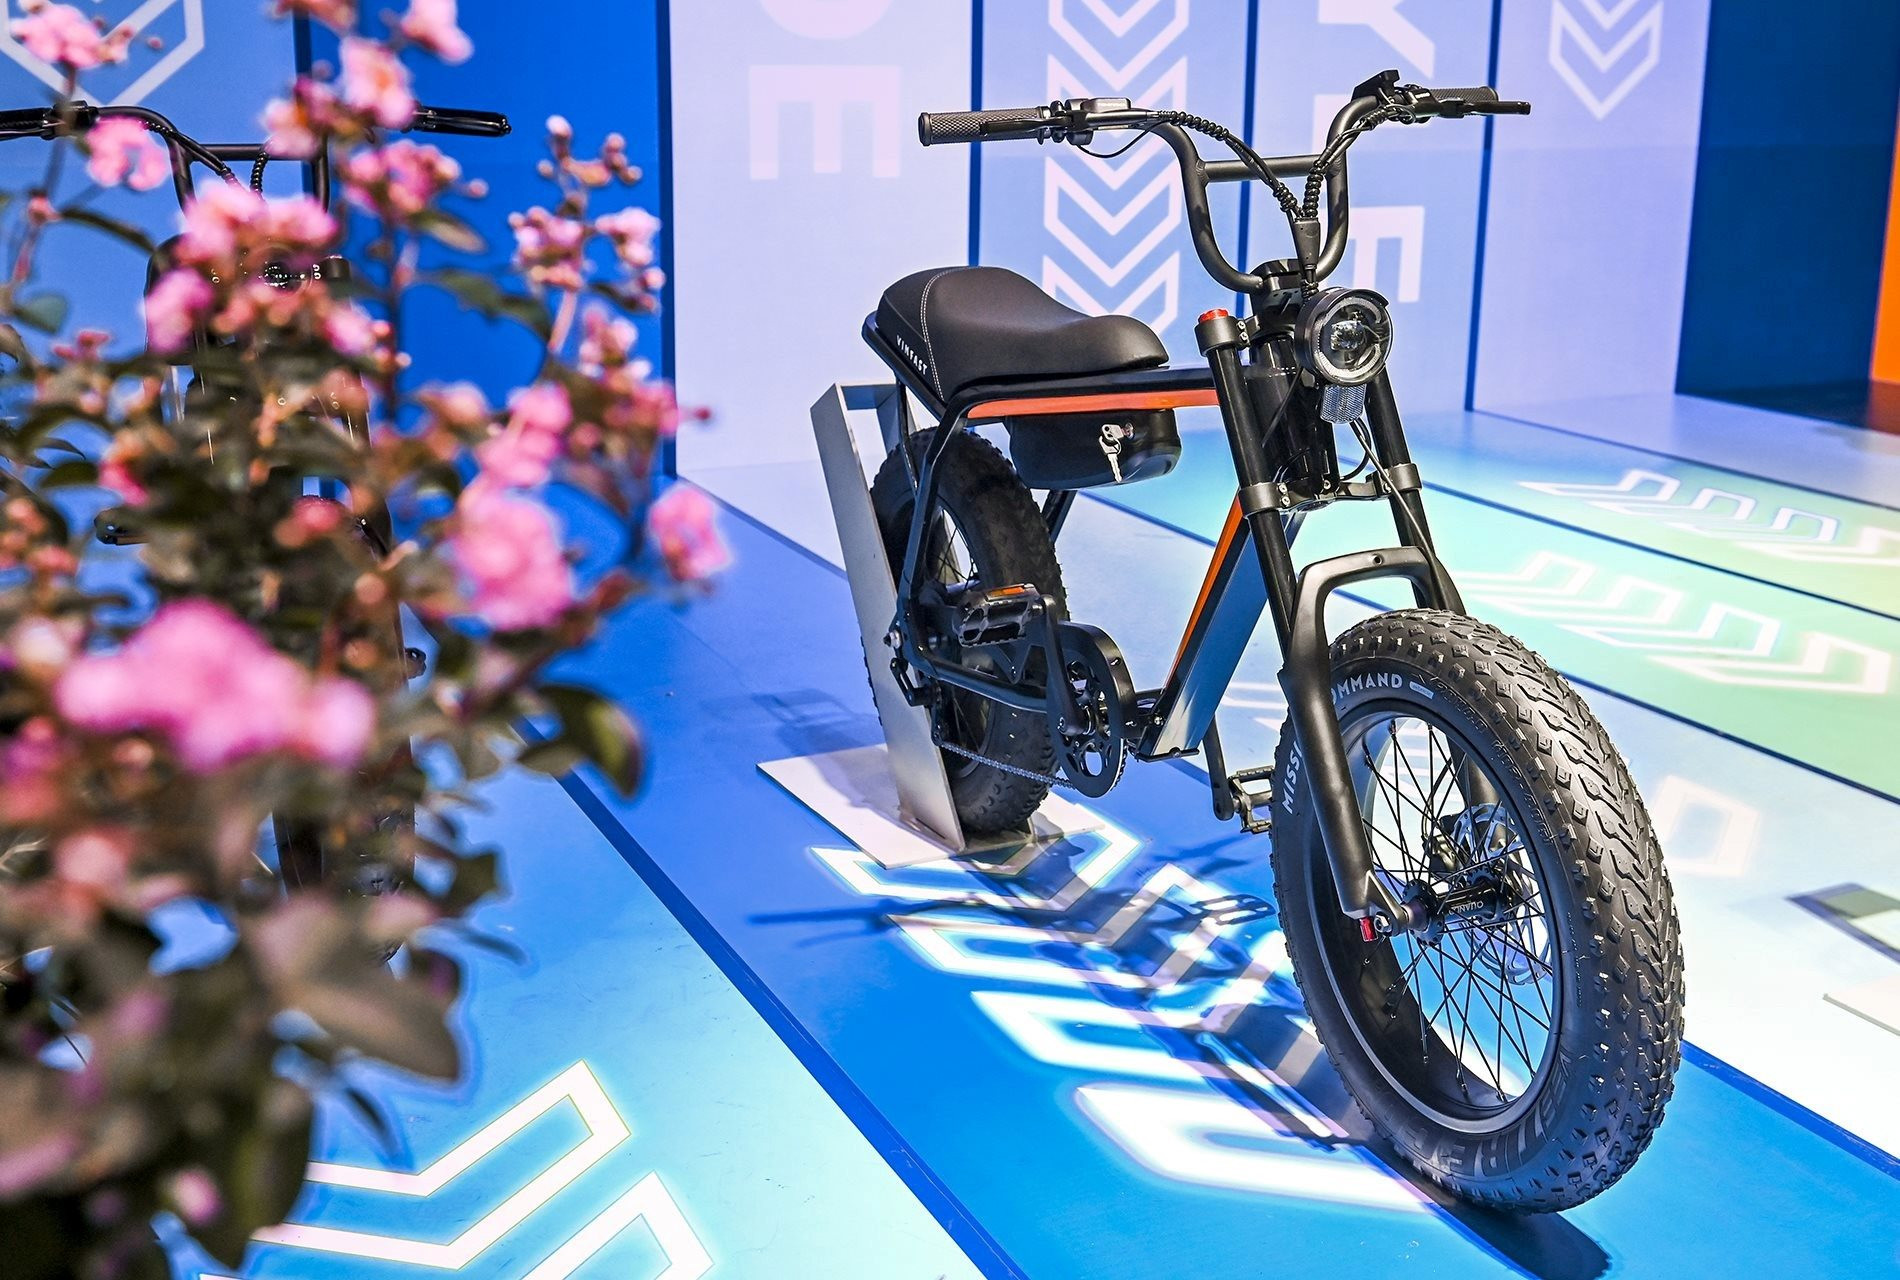 VinFast đăng ký bảo hộ kiểu dáng cho 3 mẫu xe đạp điện, ngày bán ra thị trường đang tới gần - Ảnh 3.